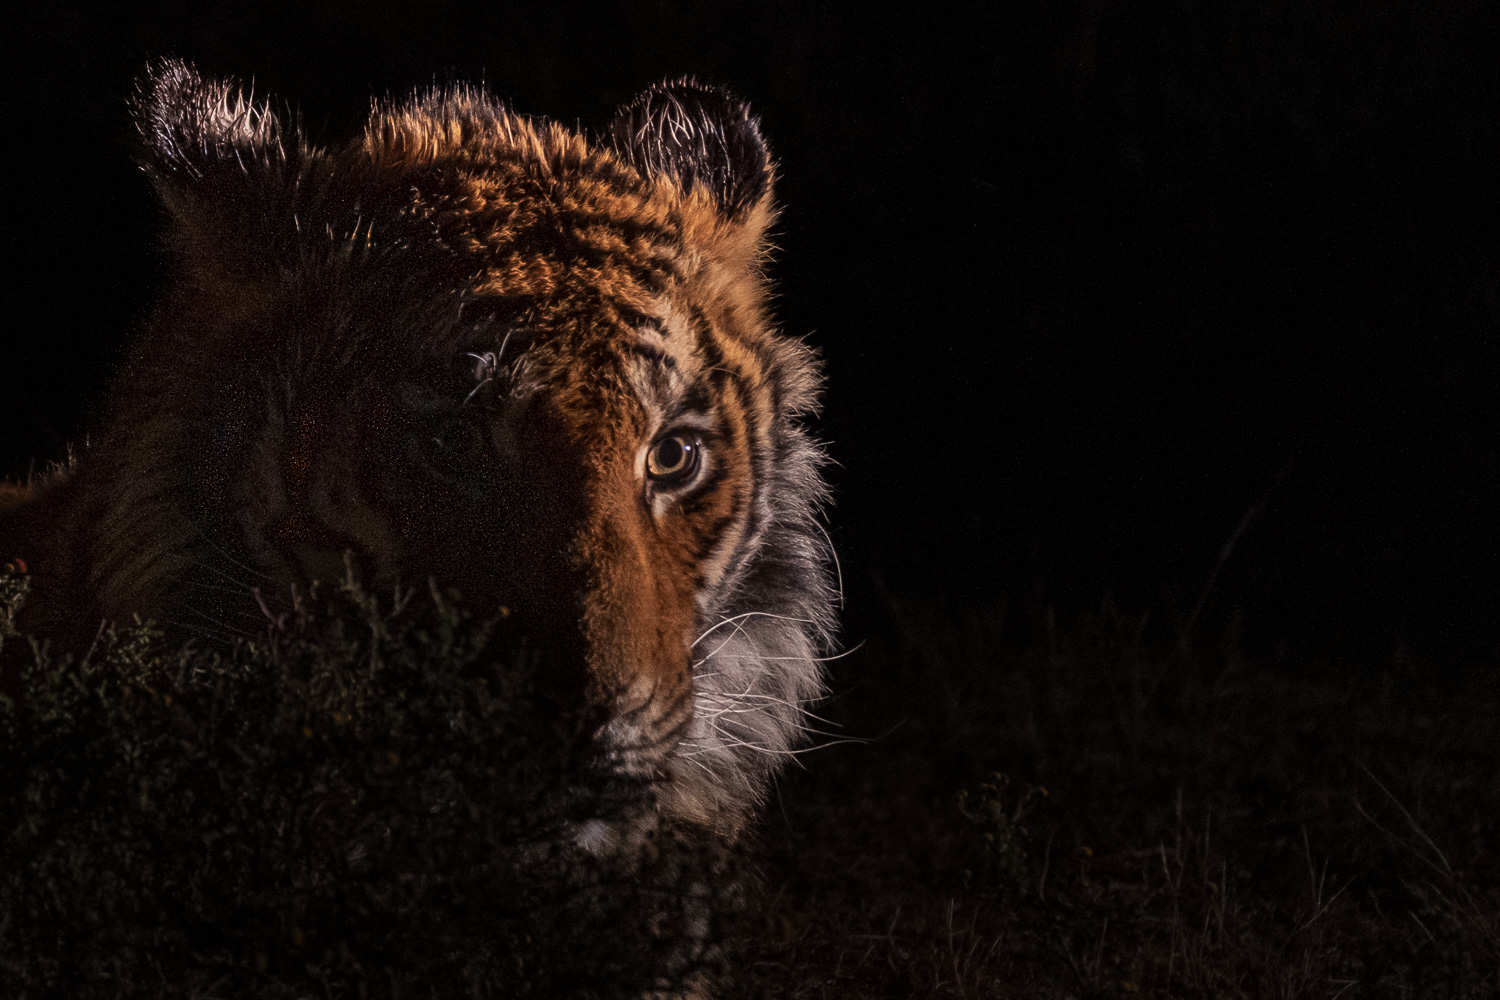 Somit war ich der erste Fotograf, der mit der Idee nach Afrika kam, Tiger in der Dunkelheit und indirekt beleuchtet zu fotografieren